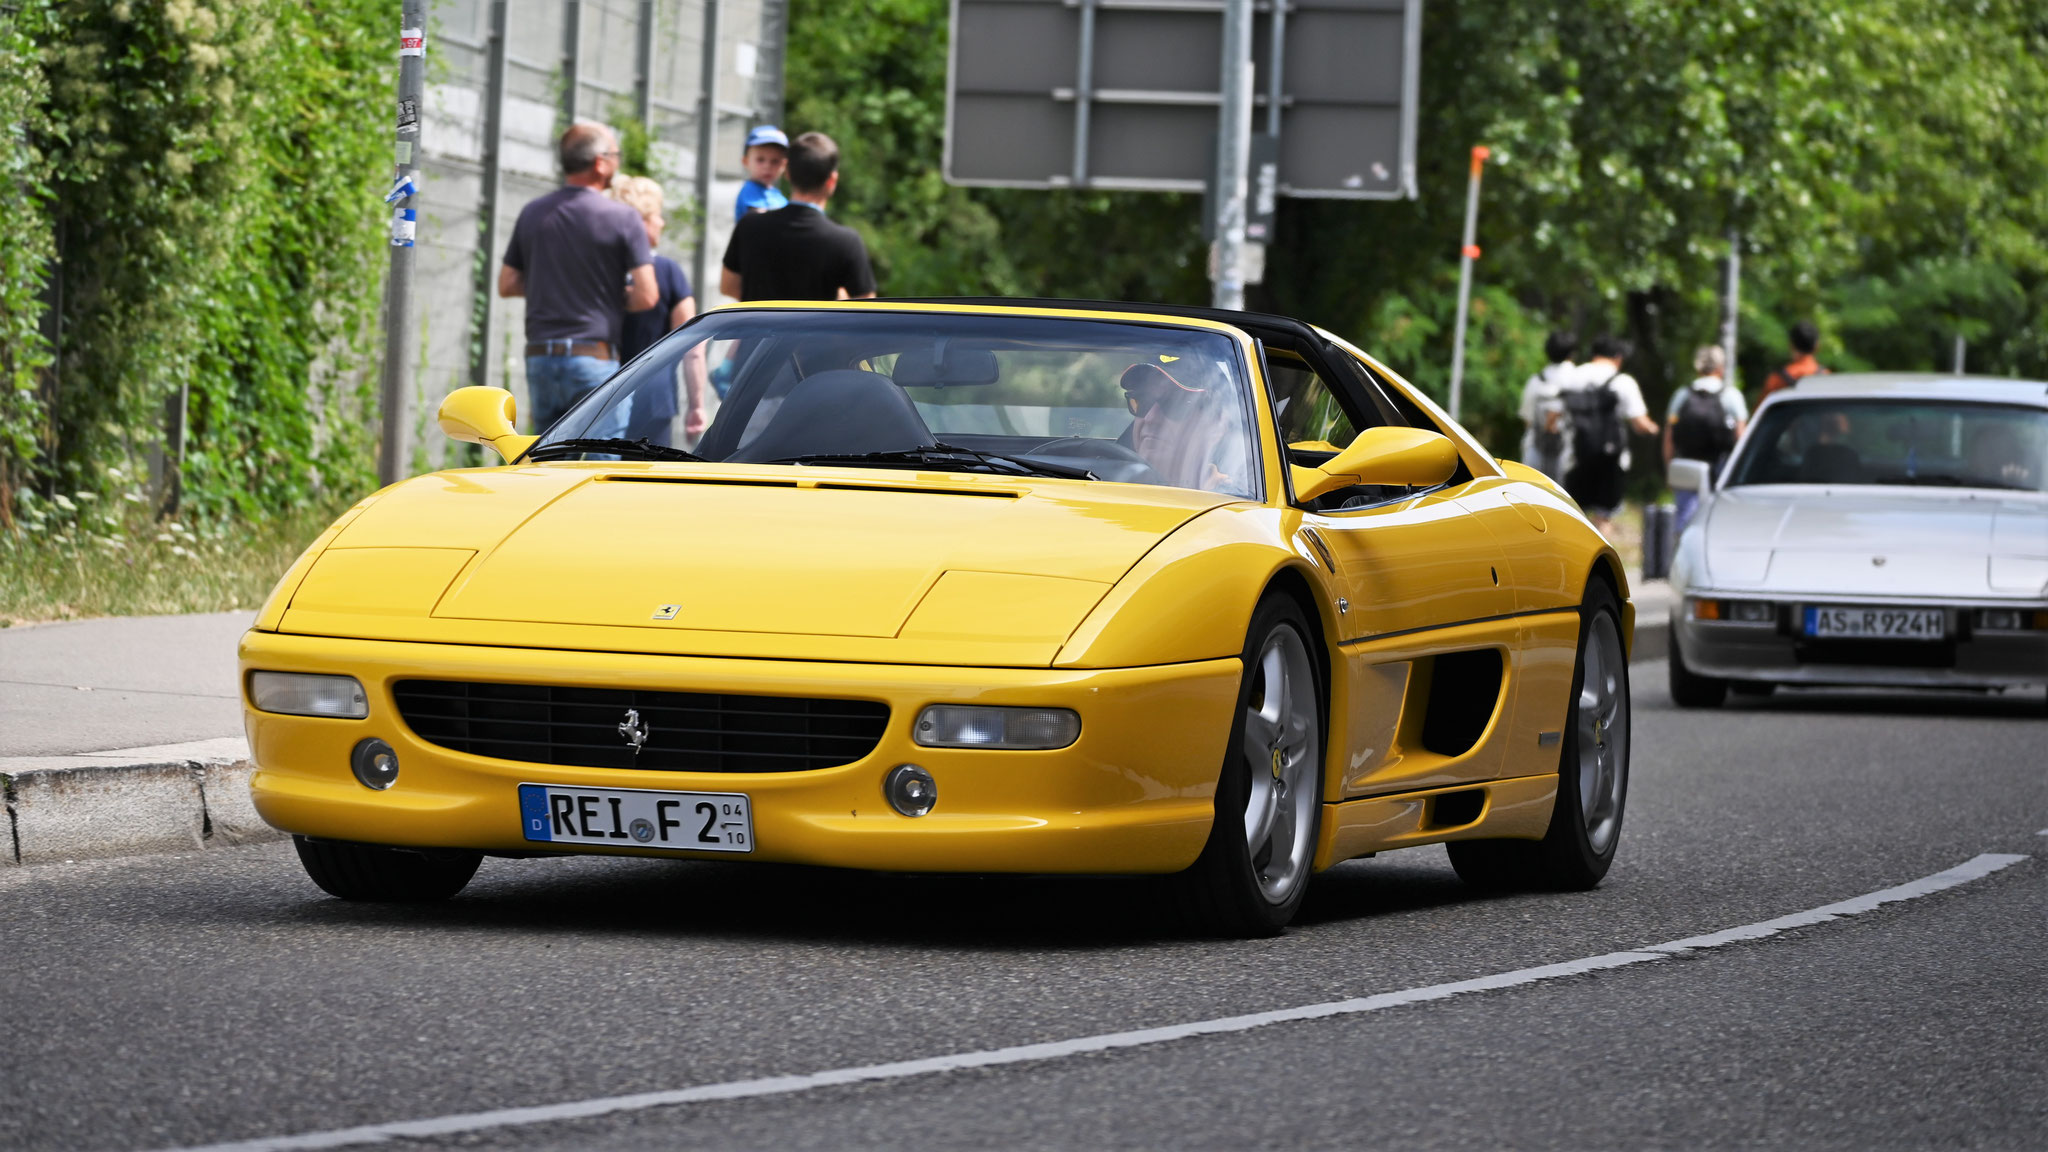 Ferrari 355 GTS - REI-F2